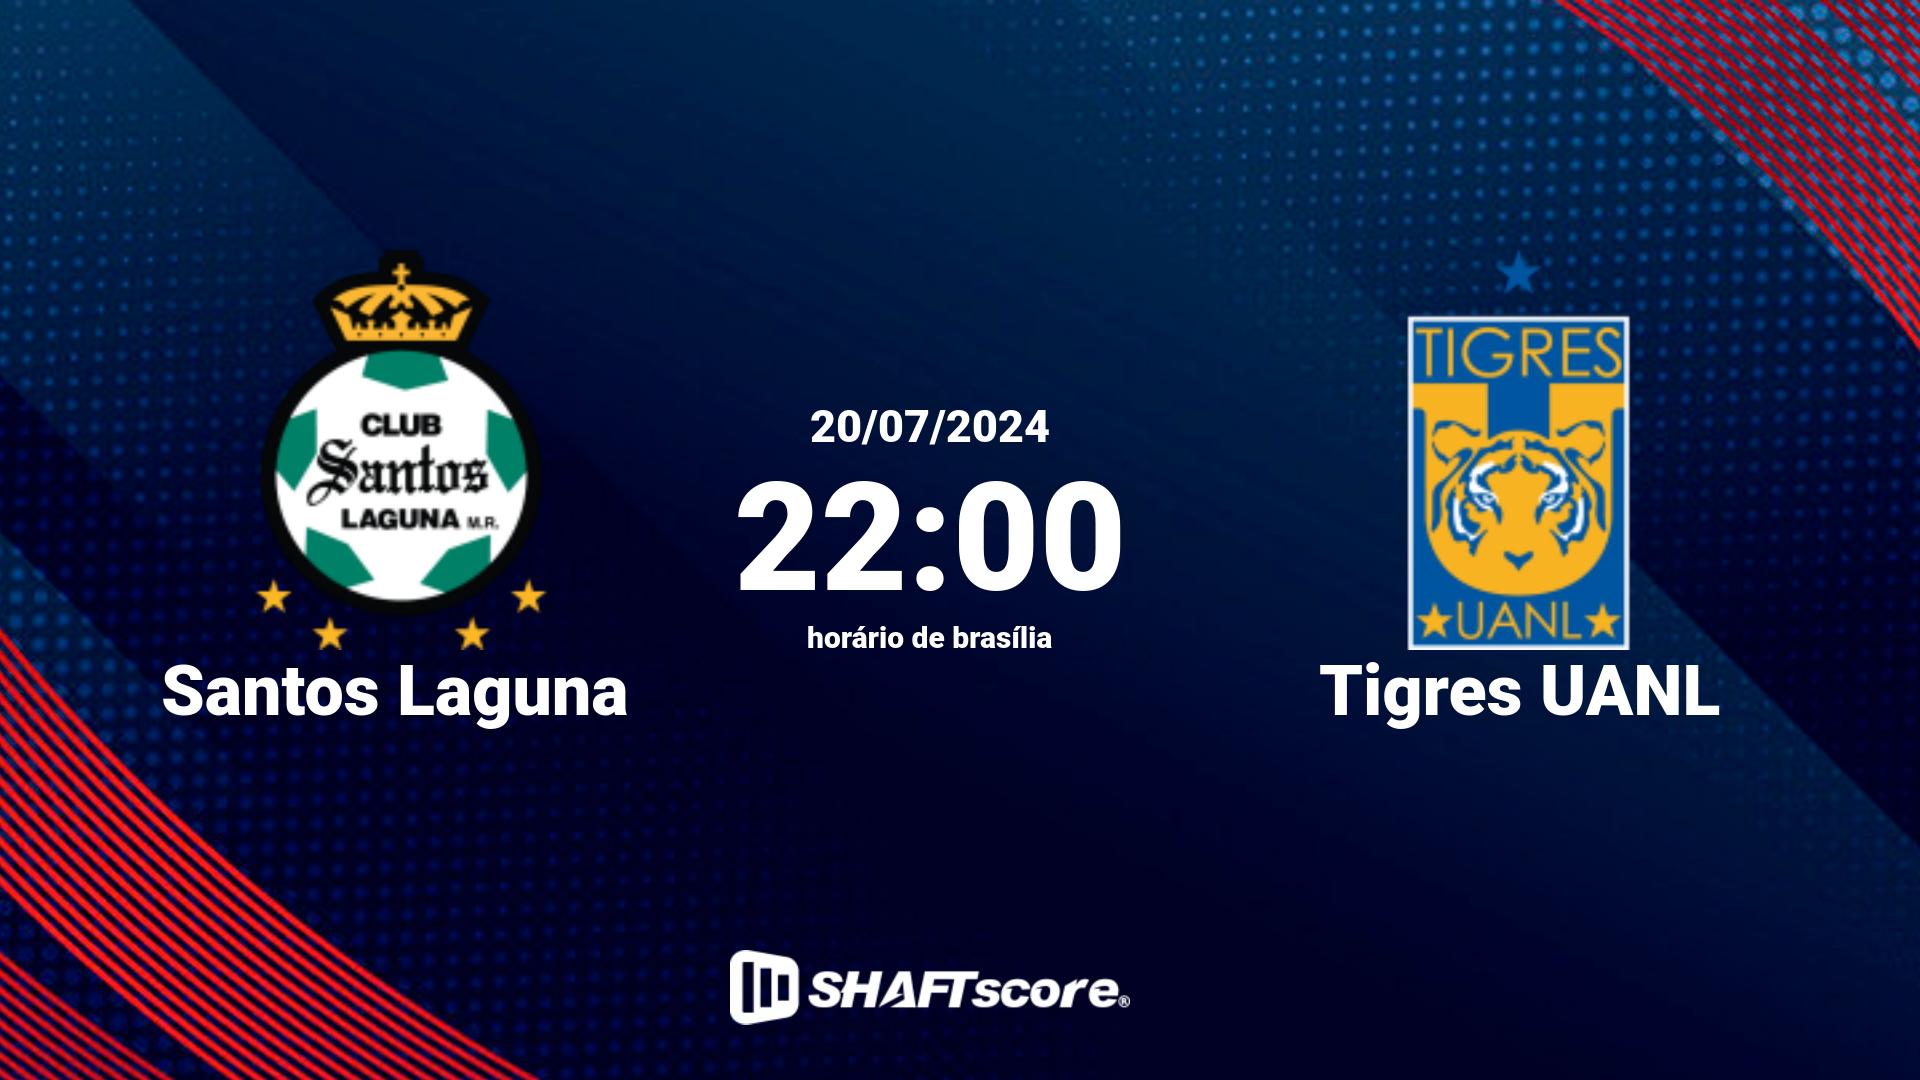 Estatísticas do jogo Santos Laguna vs Tigres UANL 20.07 22:00